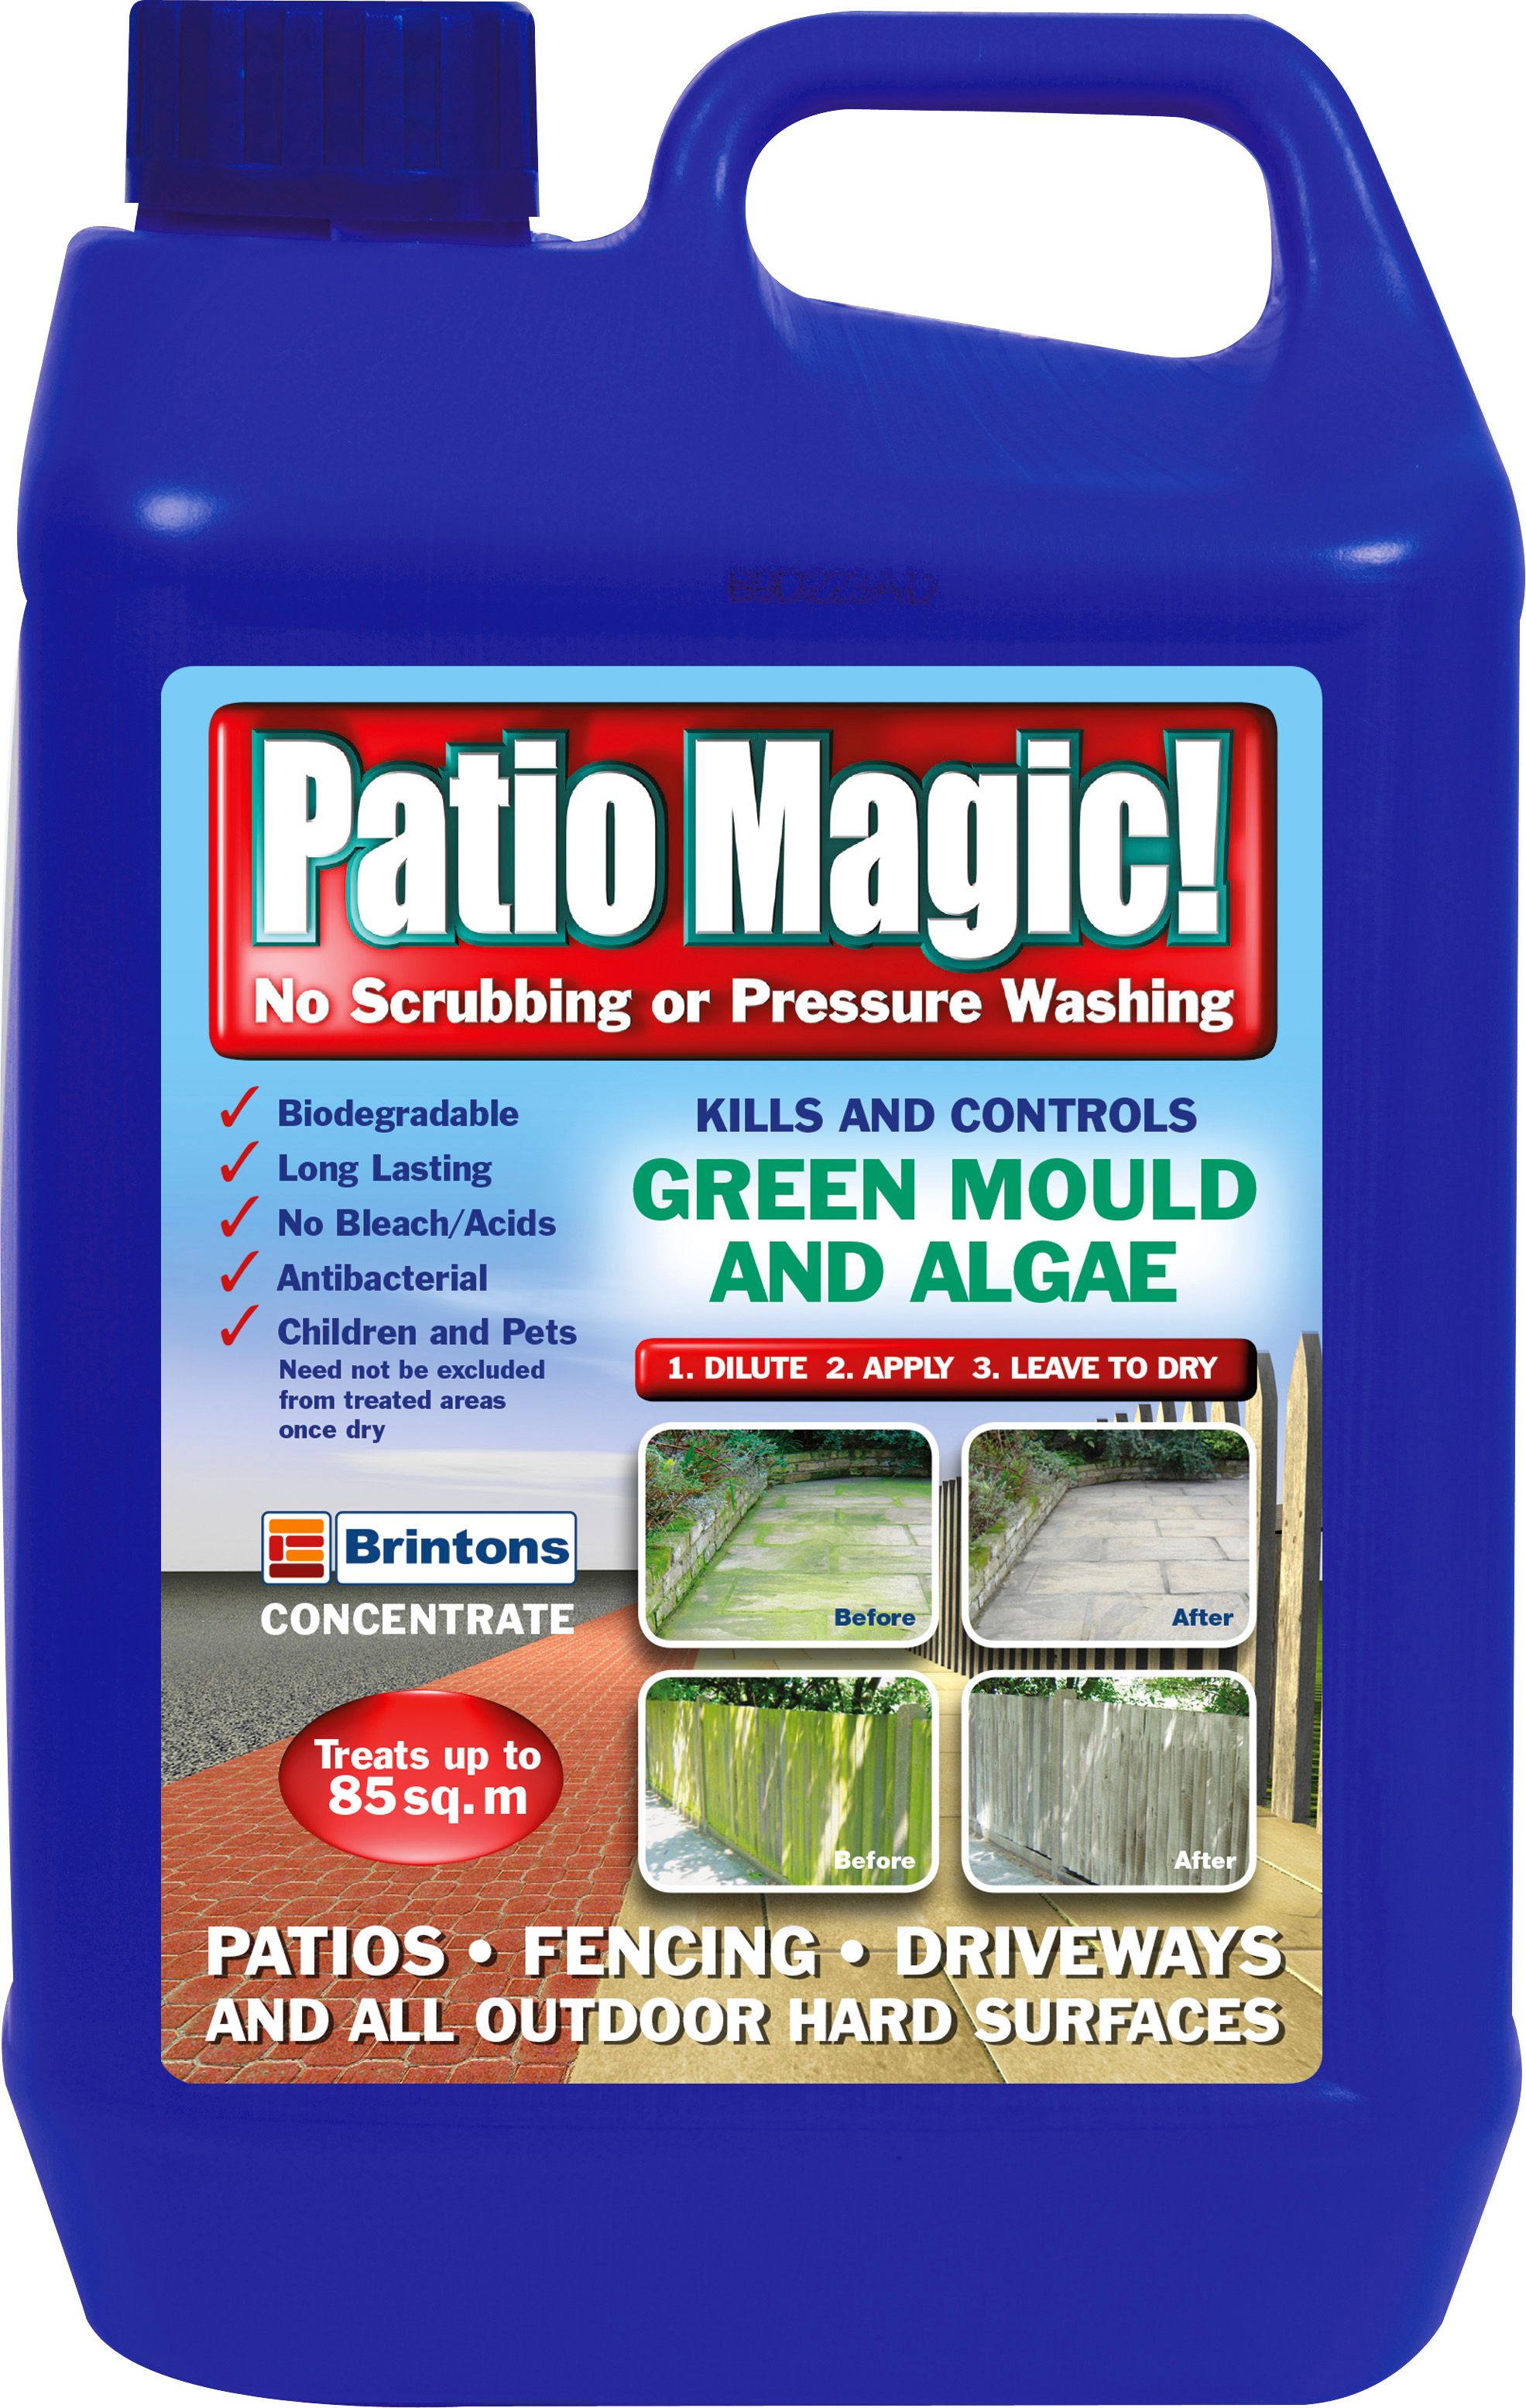 Image of Patio Magic! Patio Cleaner 2.5L